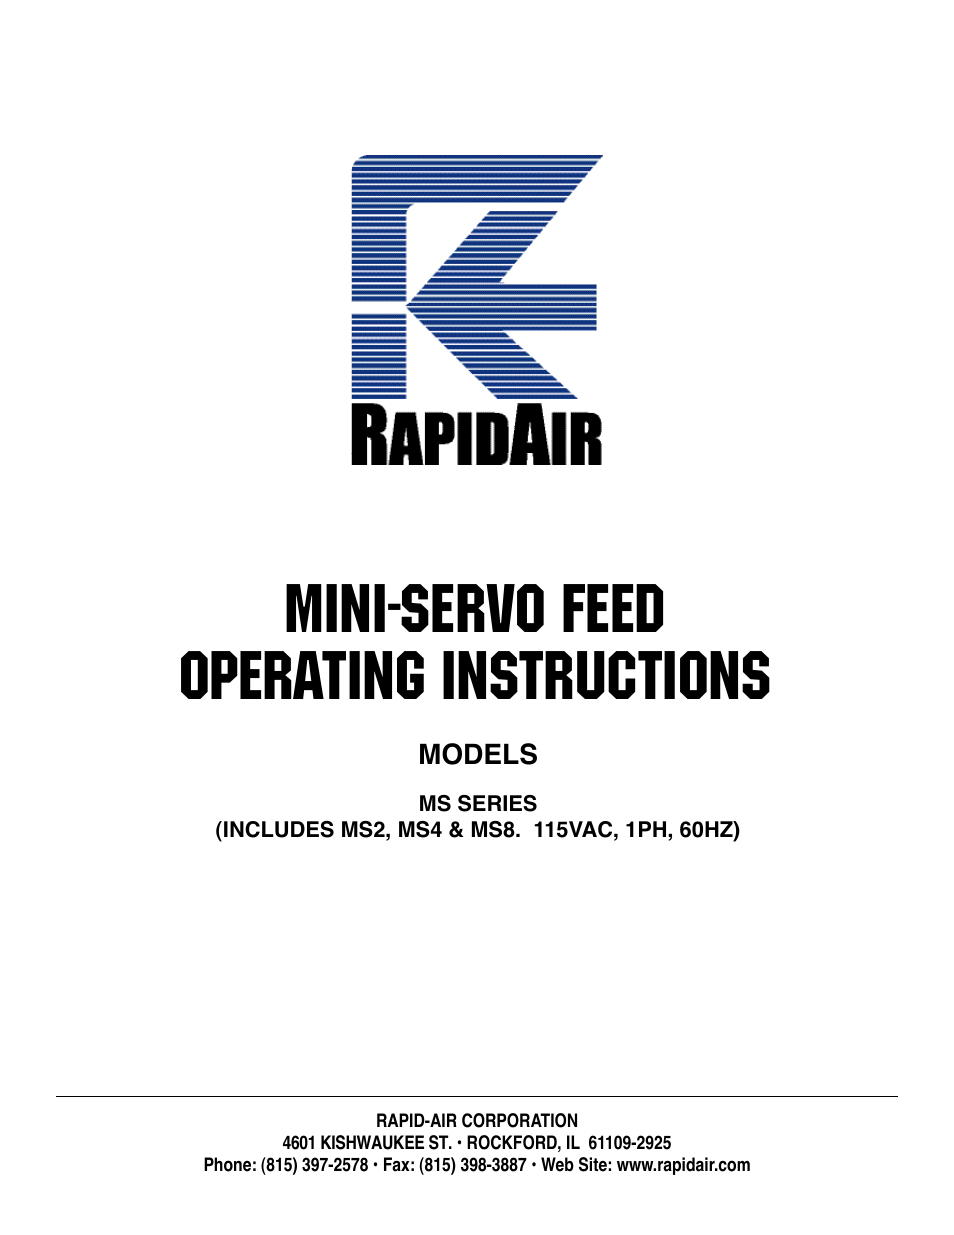 MINI-SERVO FEED: MS2, MS4 & MS8. 115vac, 1ph, 60hz